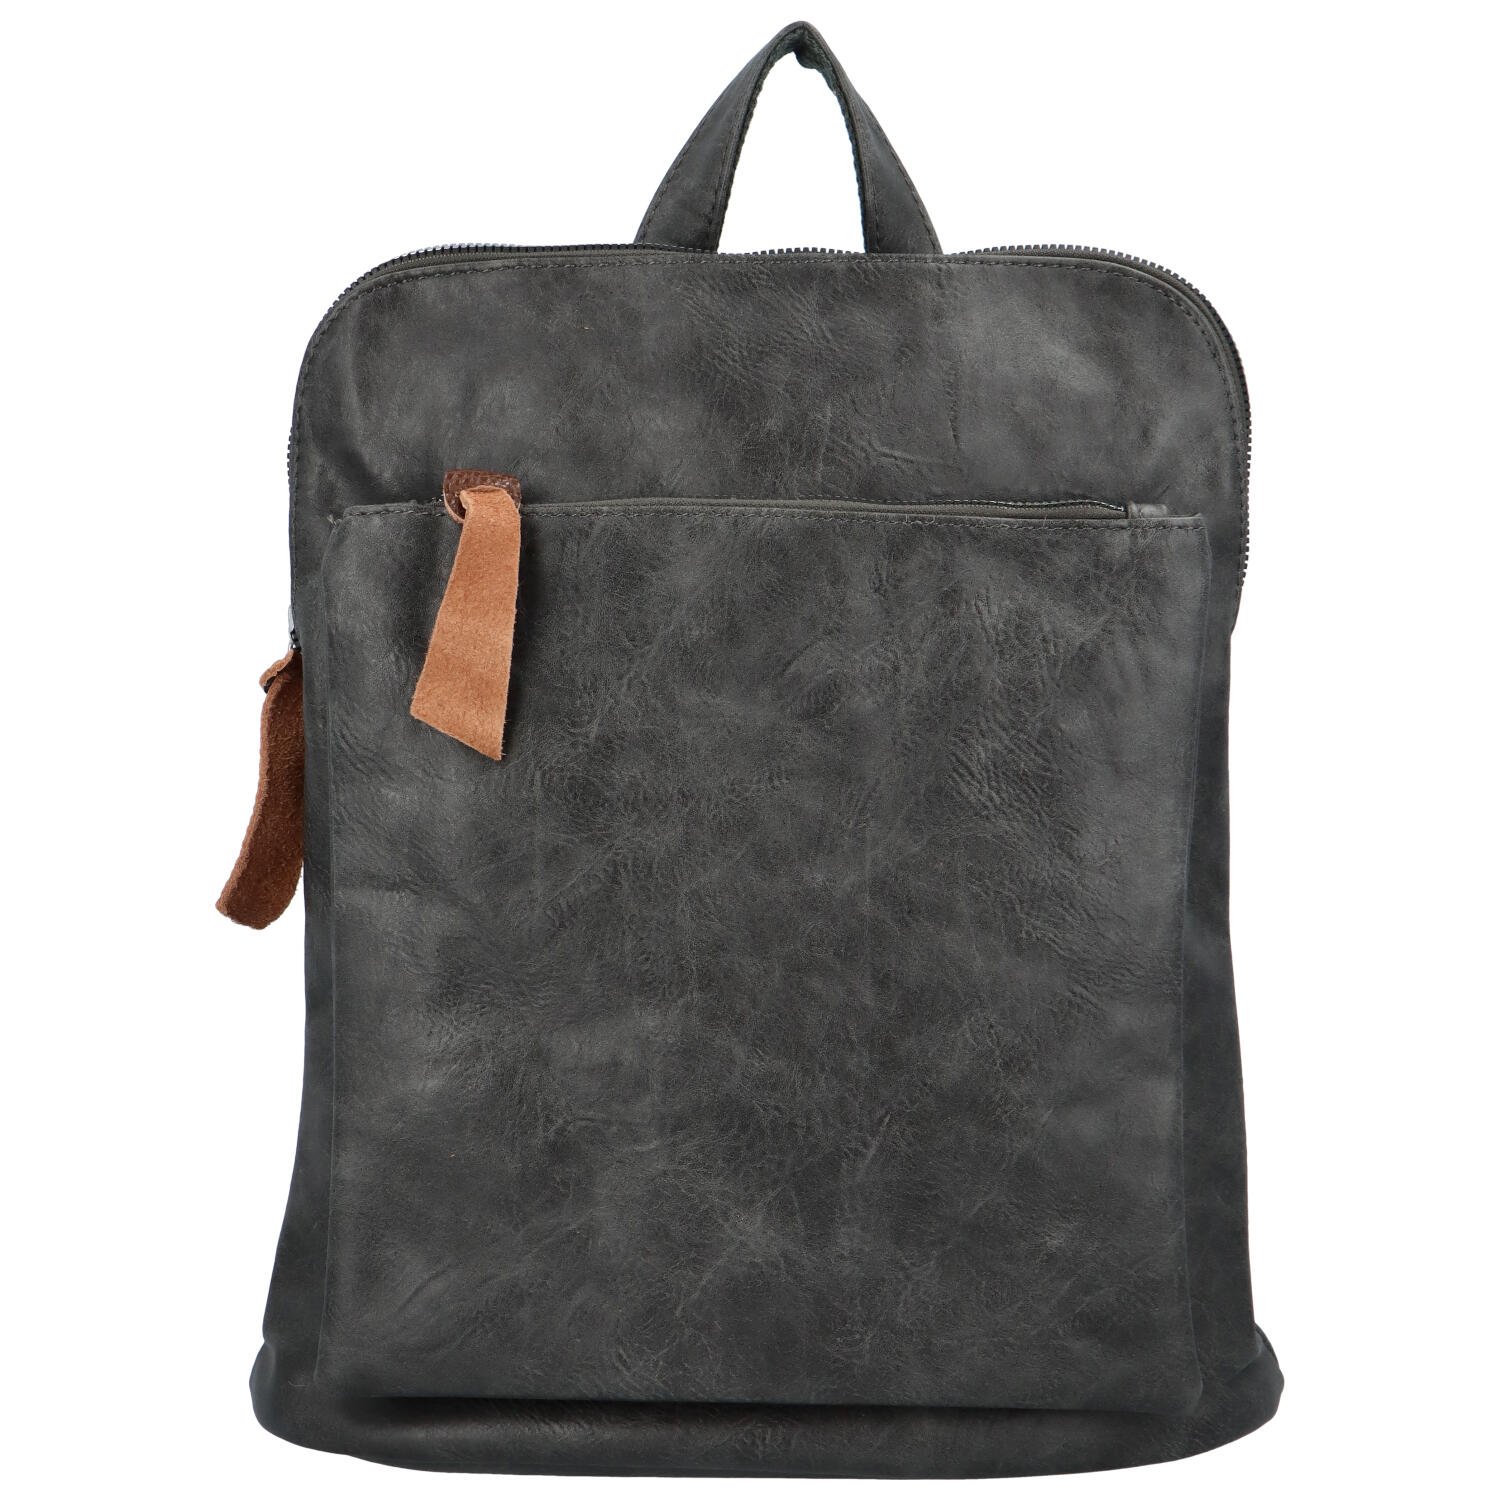 Dámský městský batoh kabelka tmavě šedý - Paolo Bags Buginni